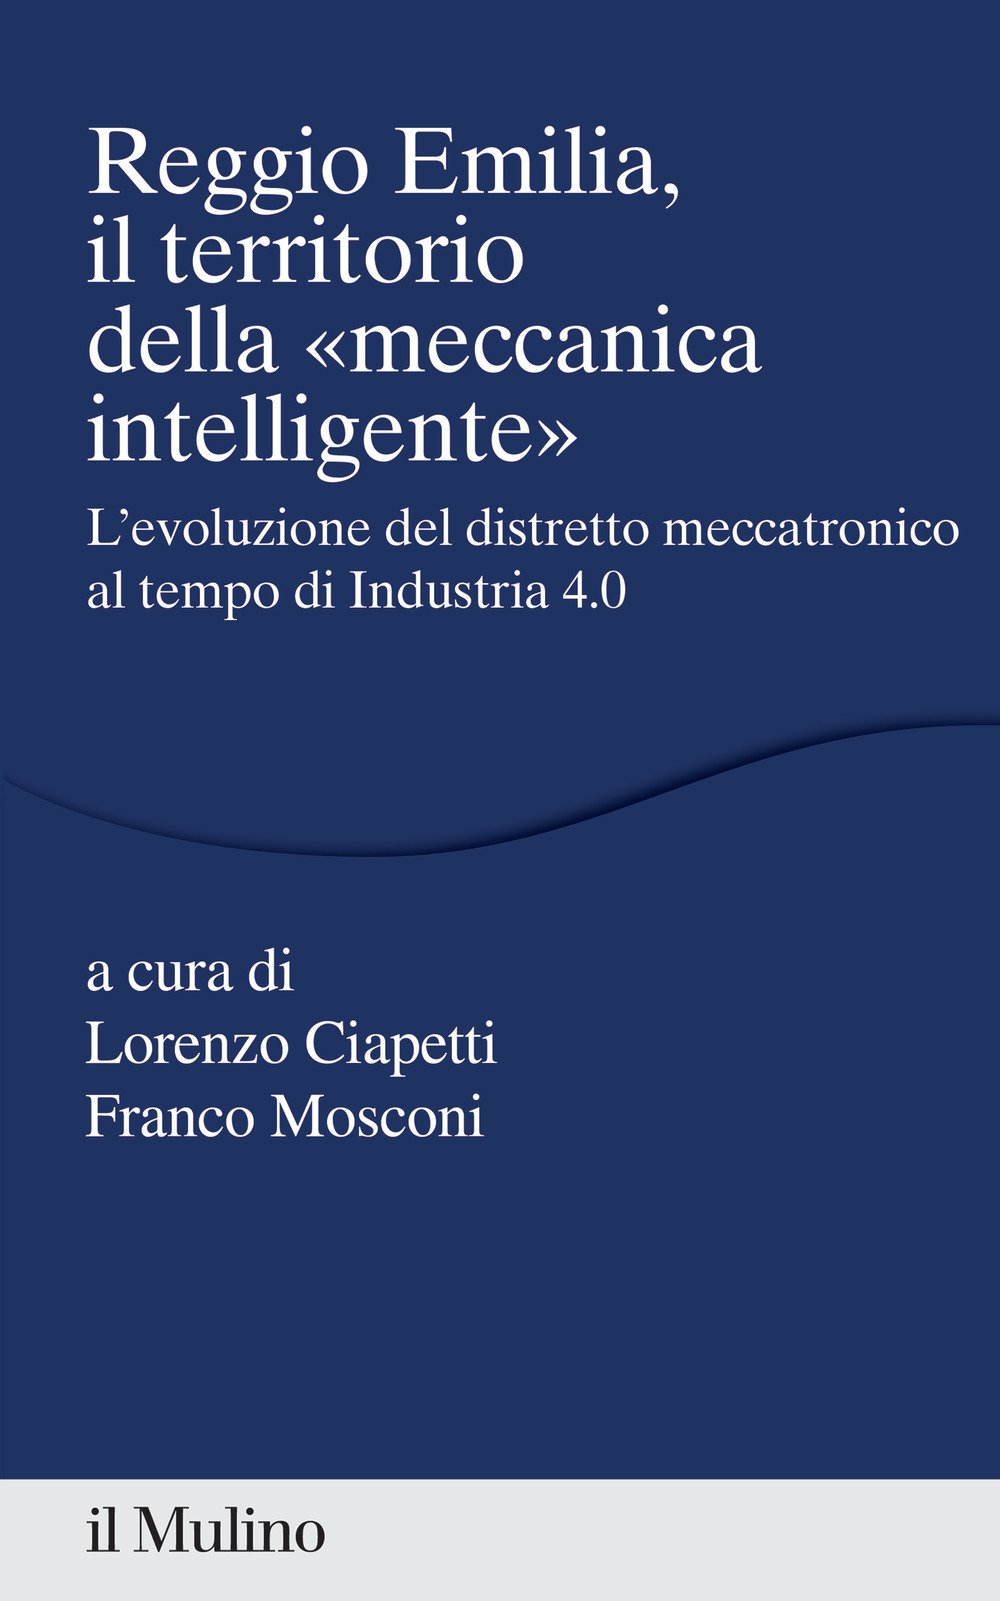 Image of Reggio Emilia, il territorio della «meccanica intelligente»